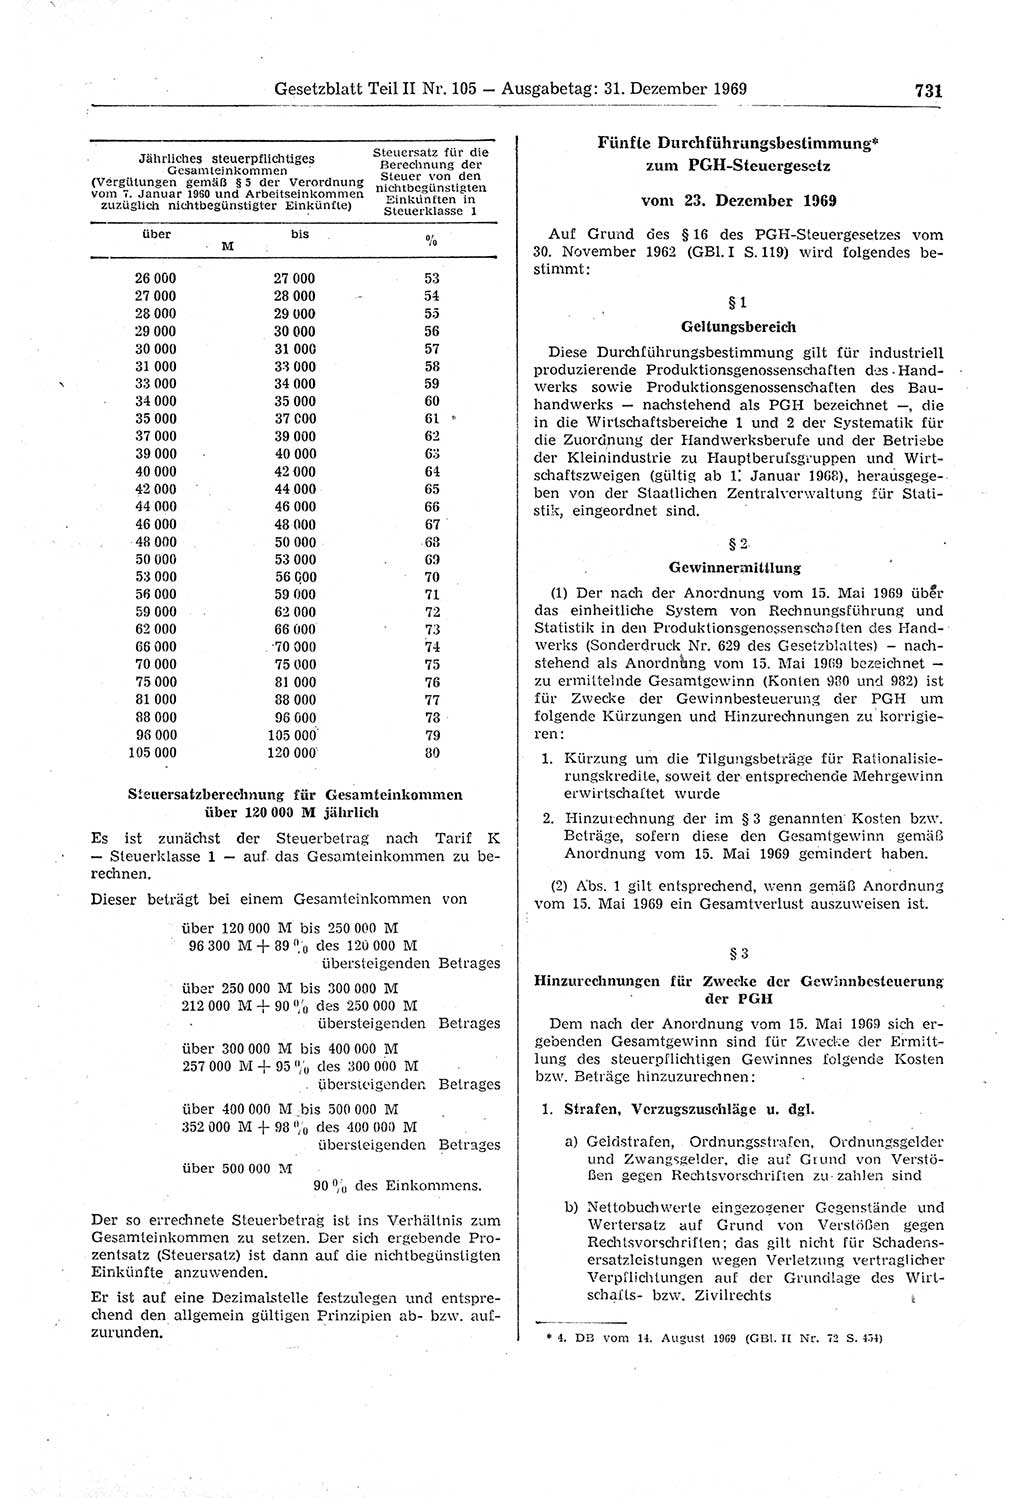 Gesetzblatt (GBl.) der Deutschen Demokratischen Republik (DDR) Teil ⅠⅠ 1969, Seite 731 (GBl. DDR ⅠⅠ 1969, S. 731)